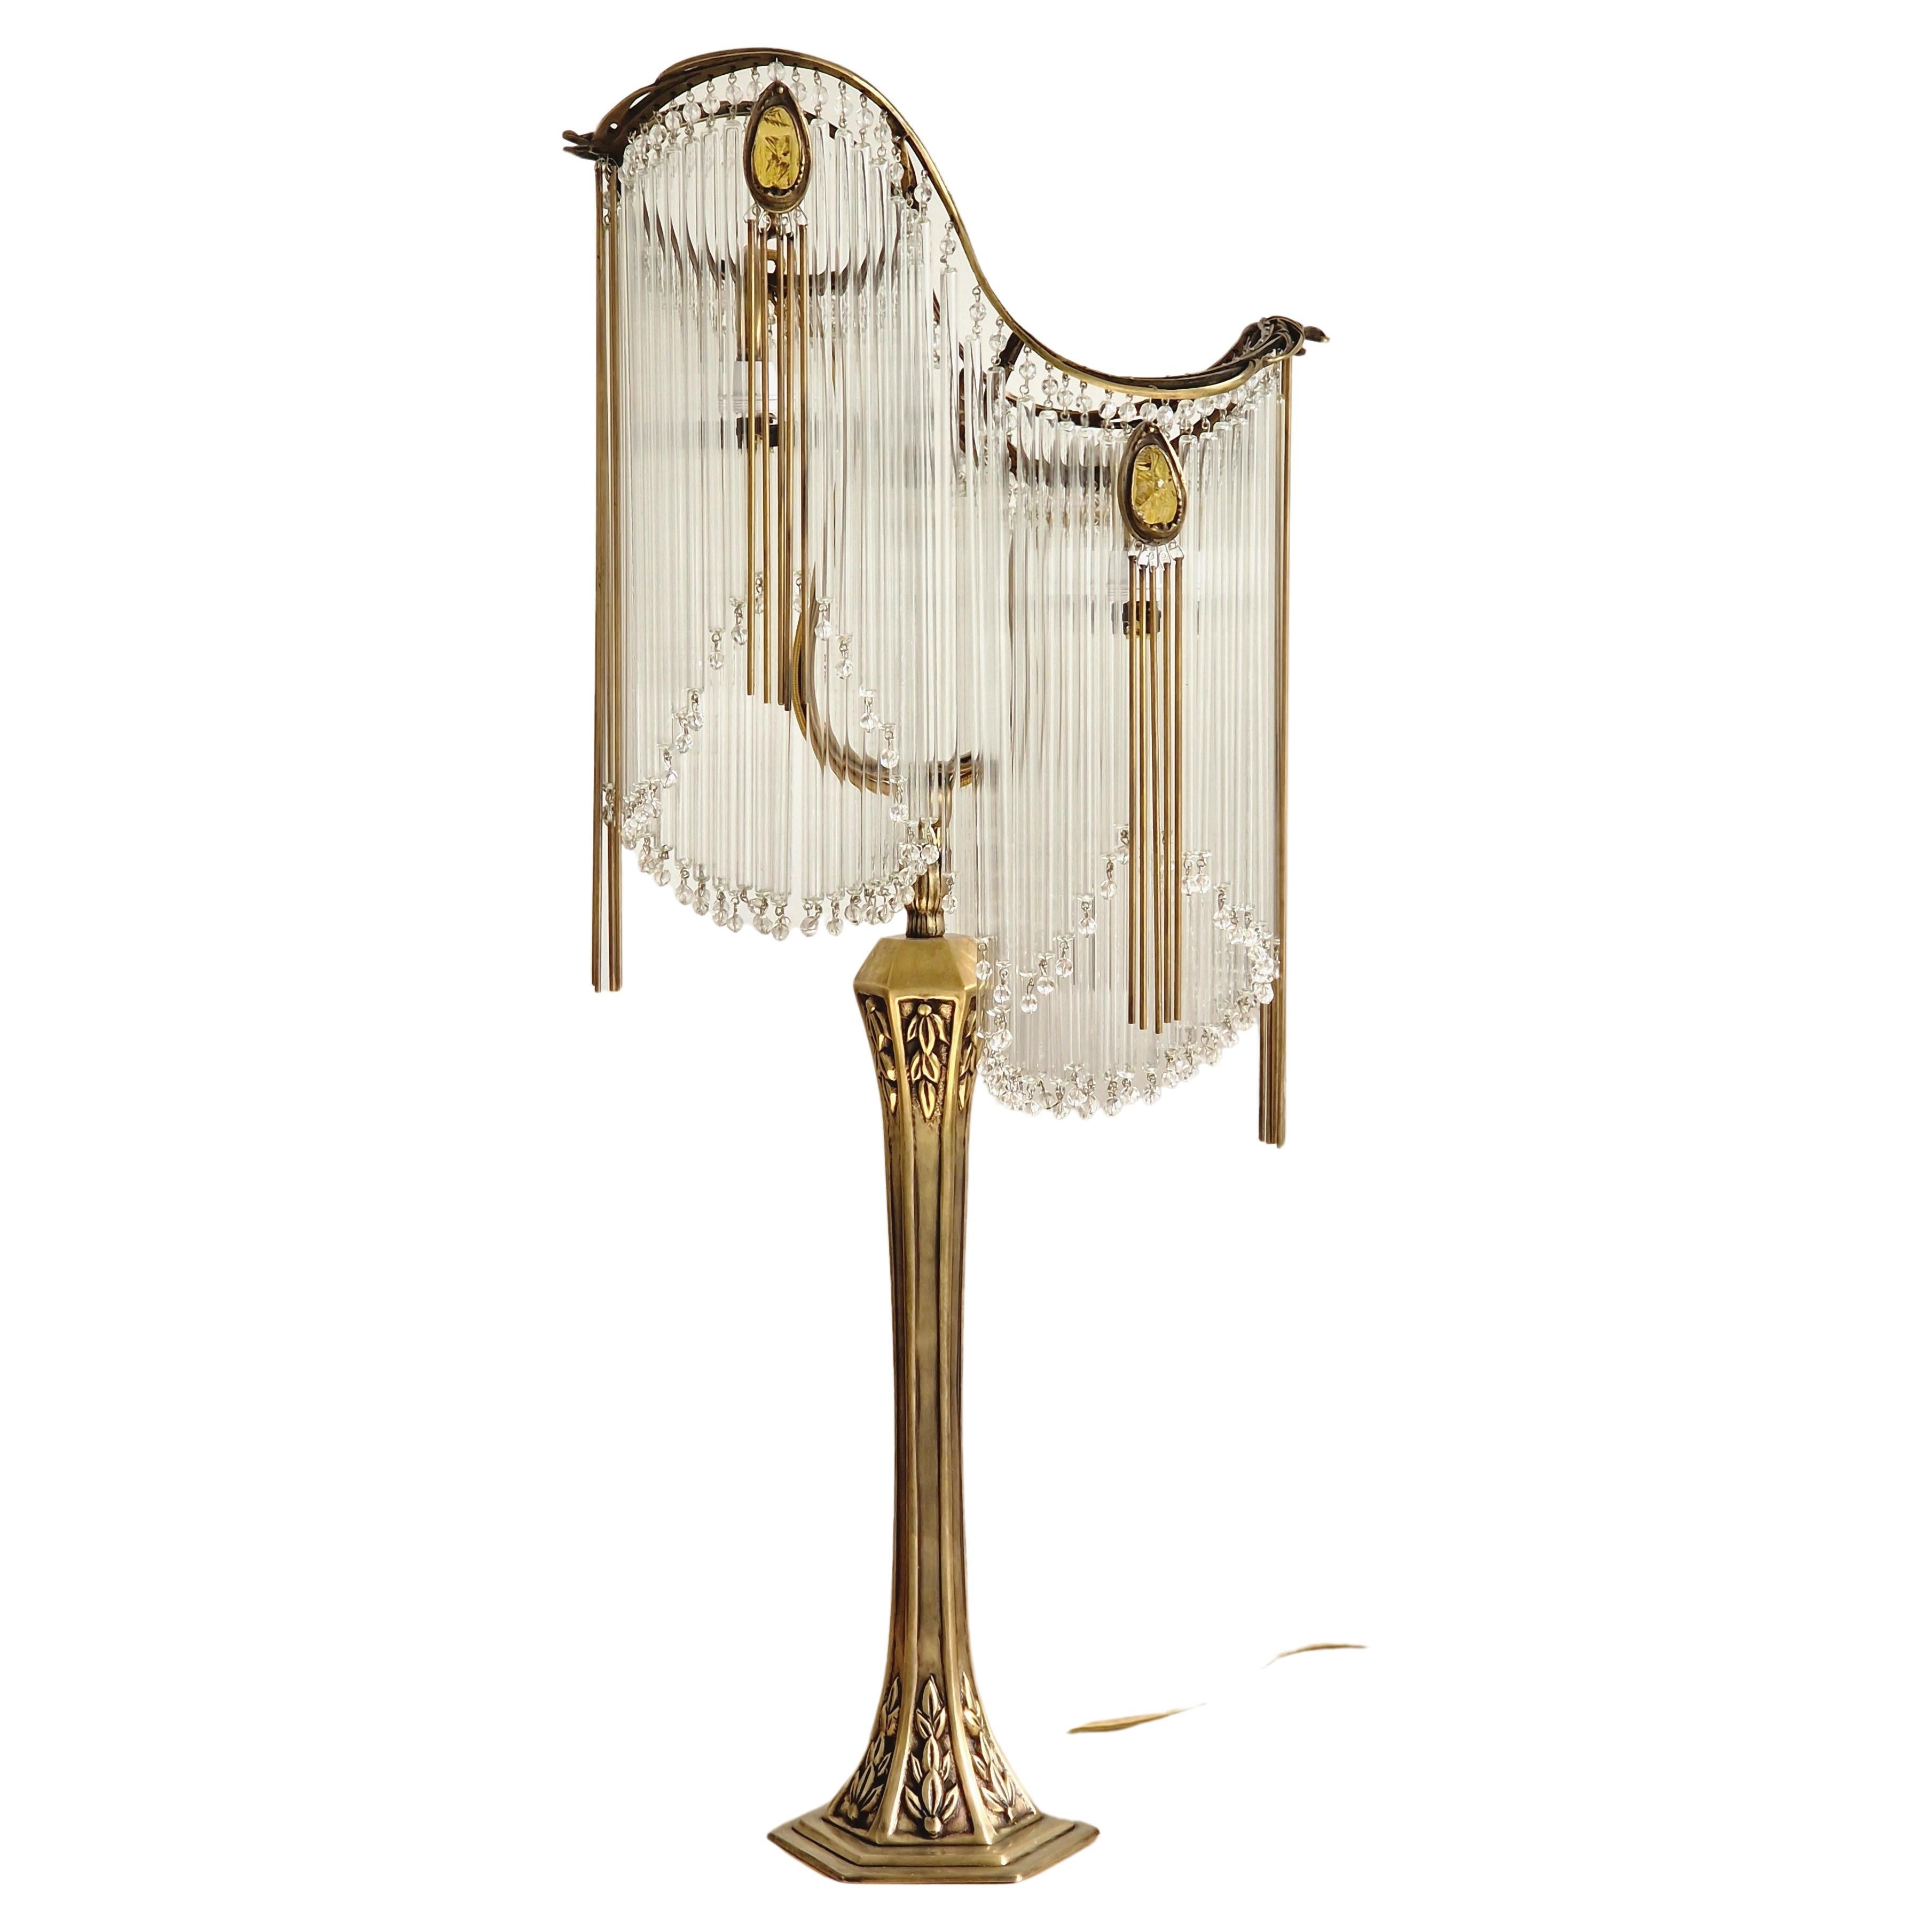 Old Bronze and Amber Pate de Verre Art Nouveau Guimard's Lampe im Jugendstil 